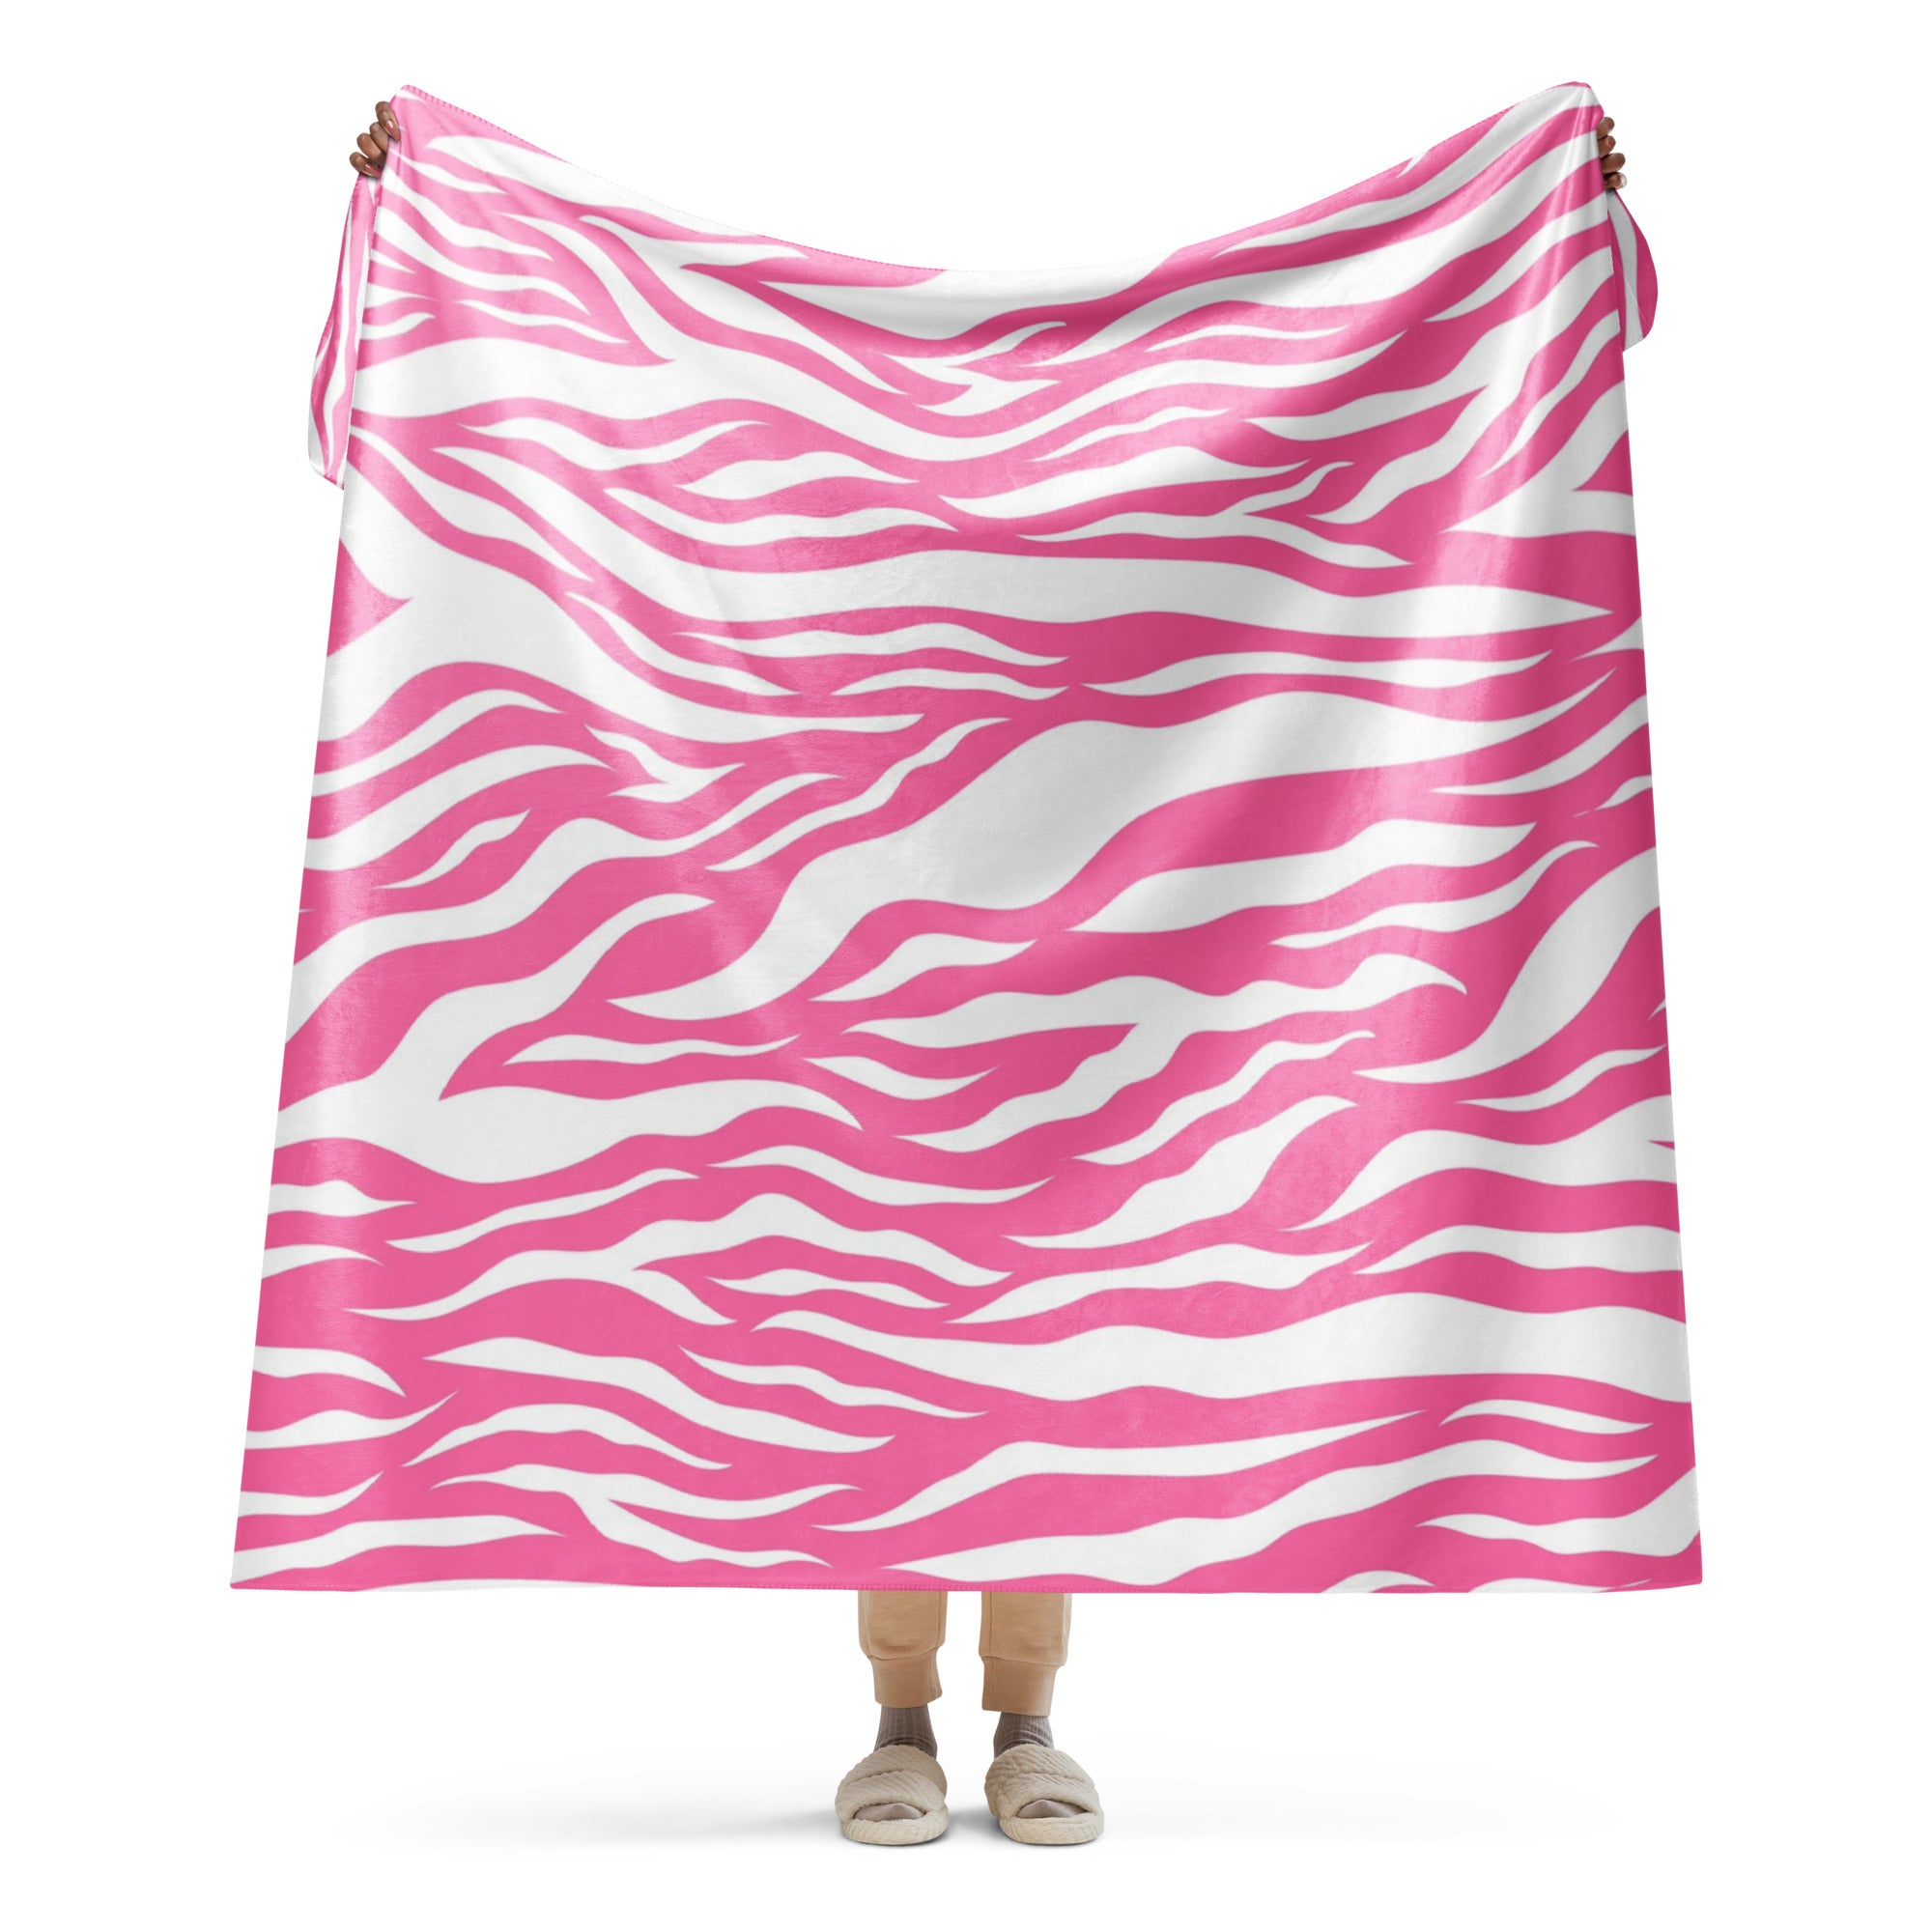 Pink and White Zebra Print Sherpa blanket